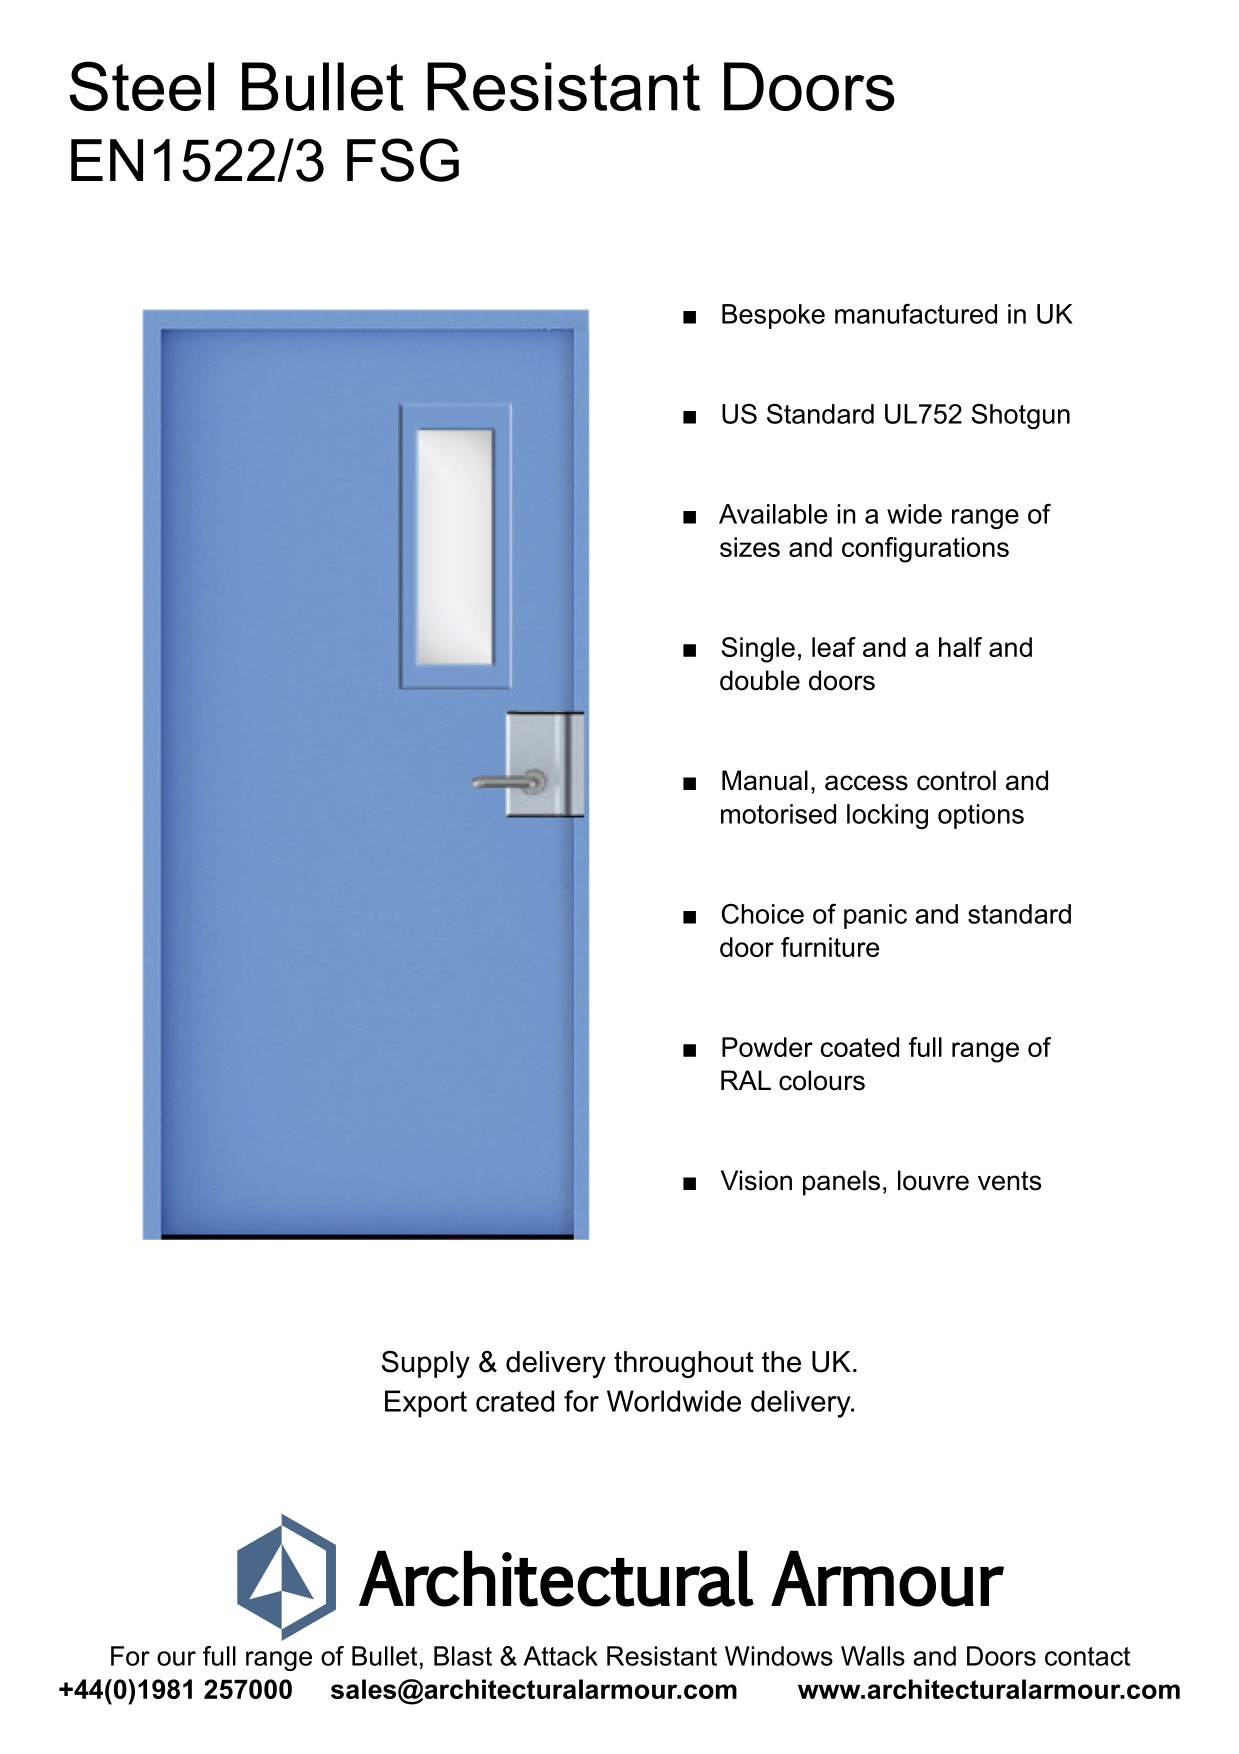 EN1522-3-FSG-Single-Slim-Vision-Panel-Bullet-Resistant-Steel-Door